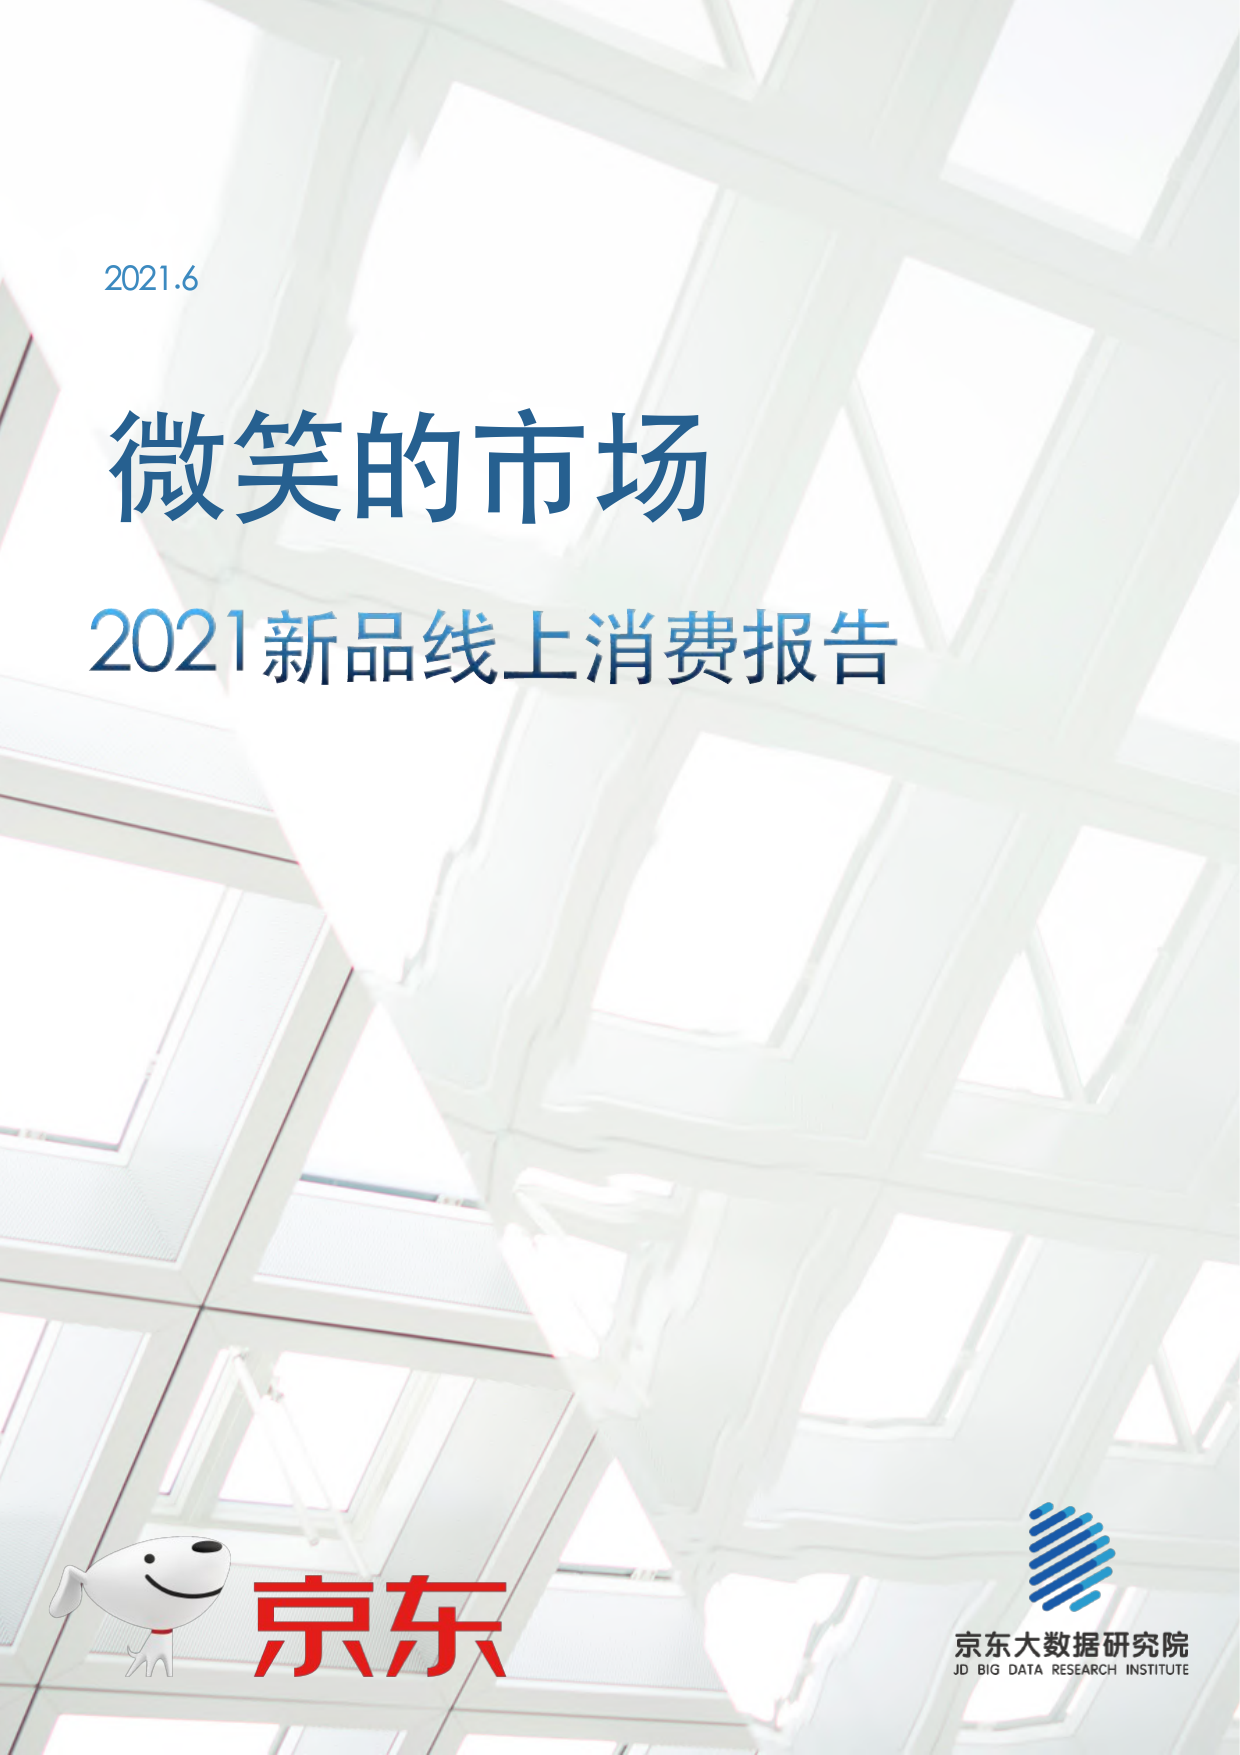 京东-2021新品线上消费报告